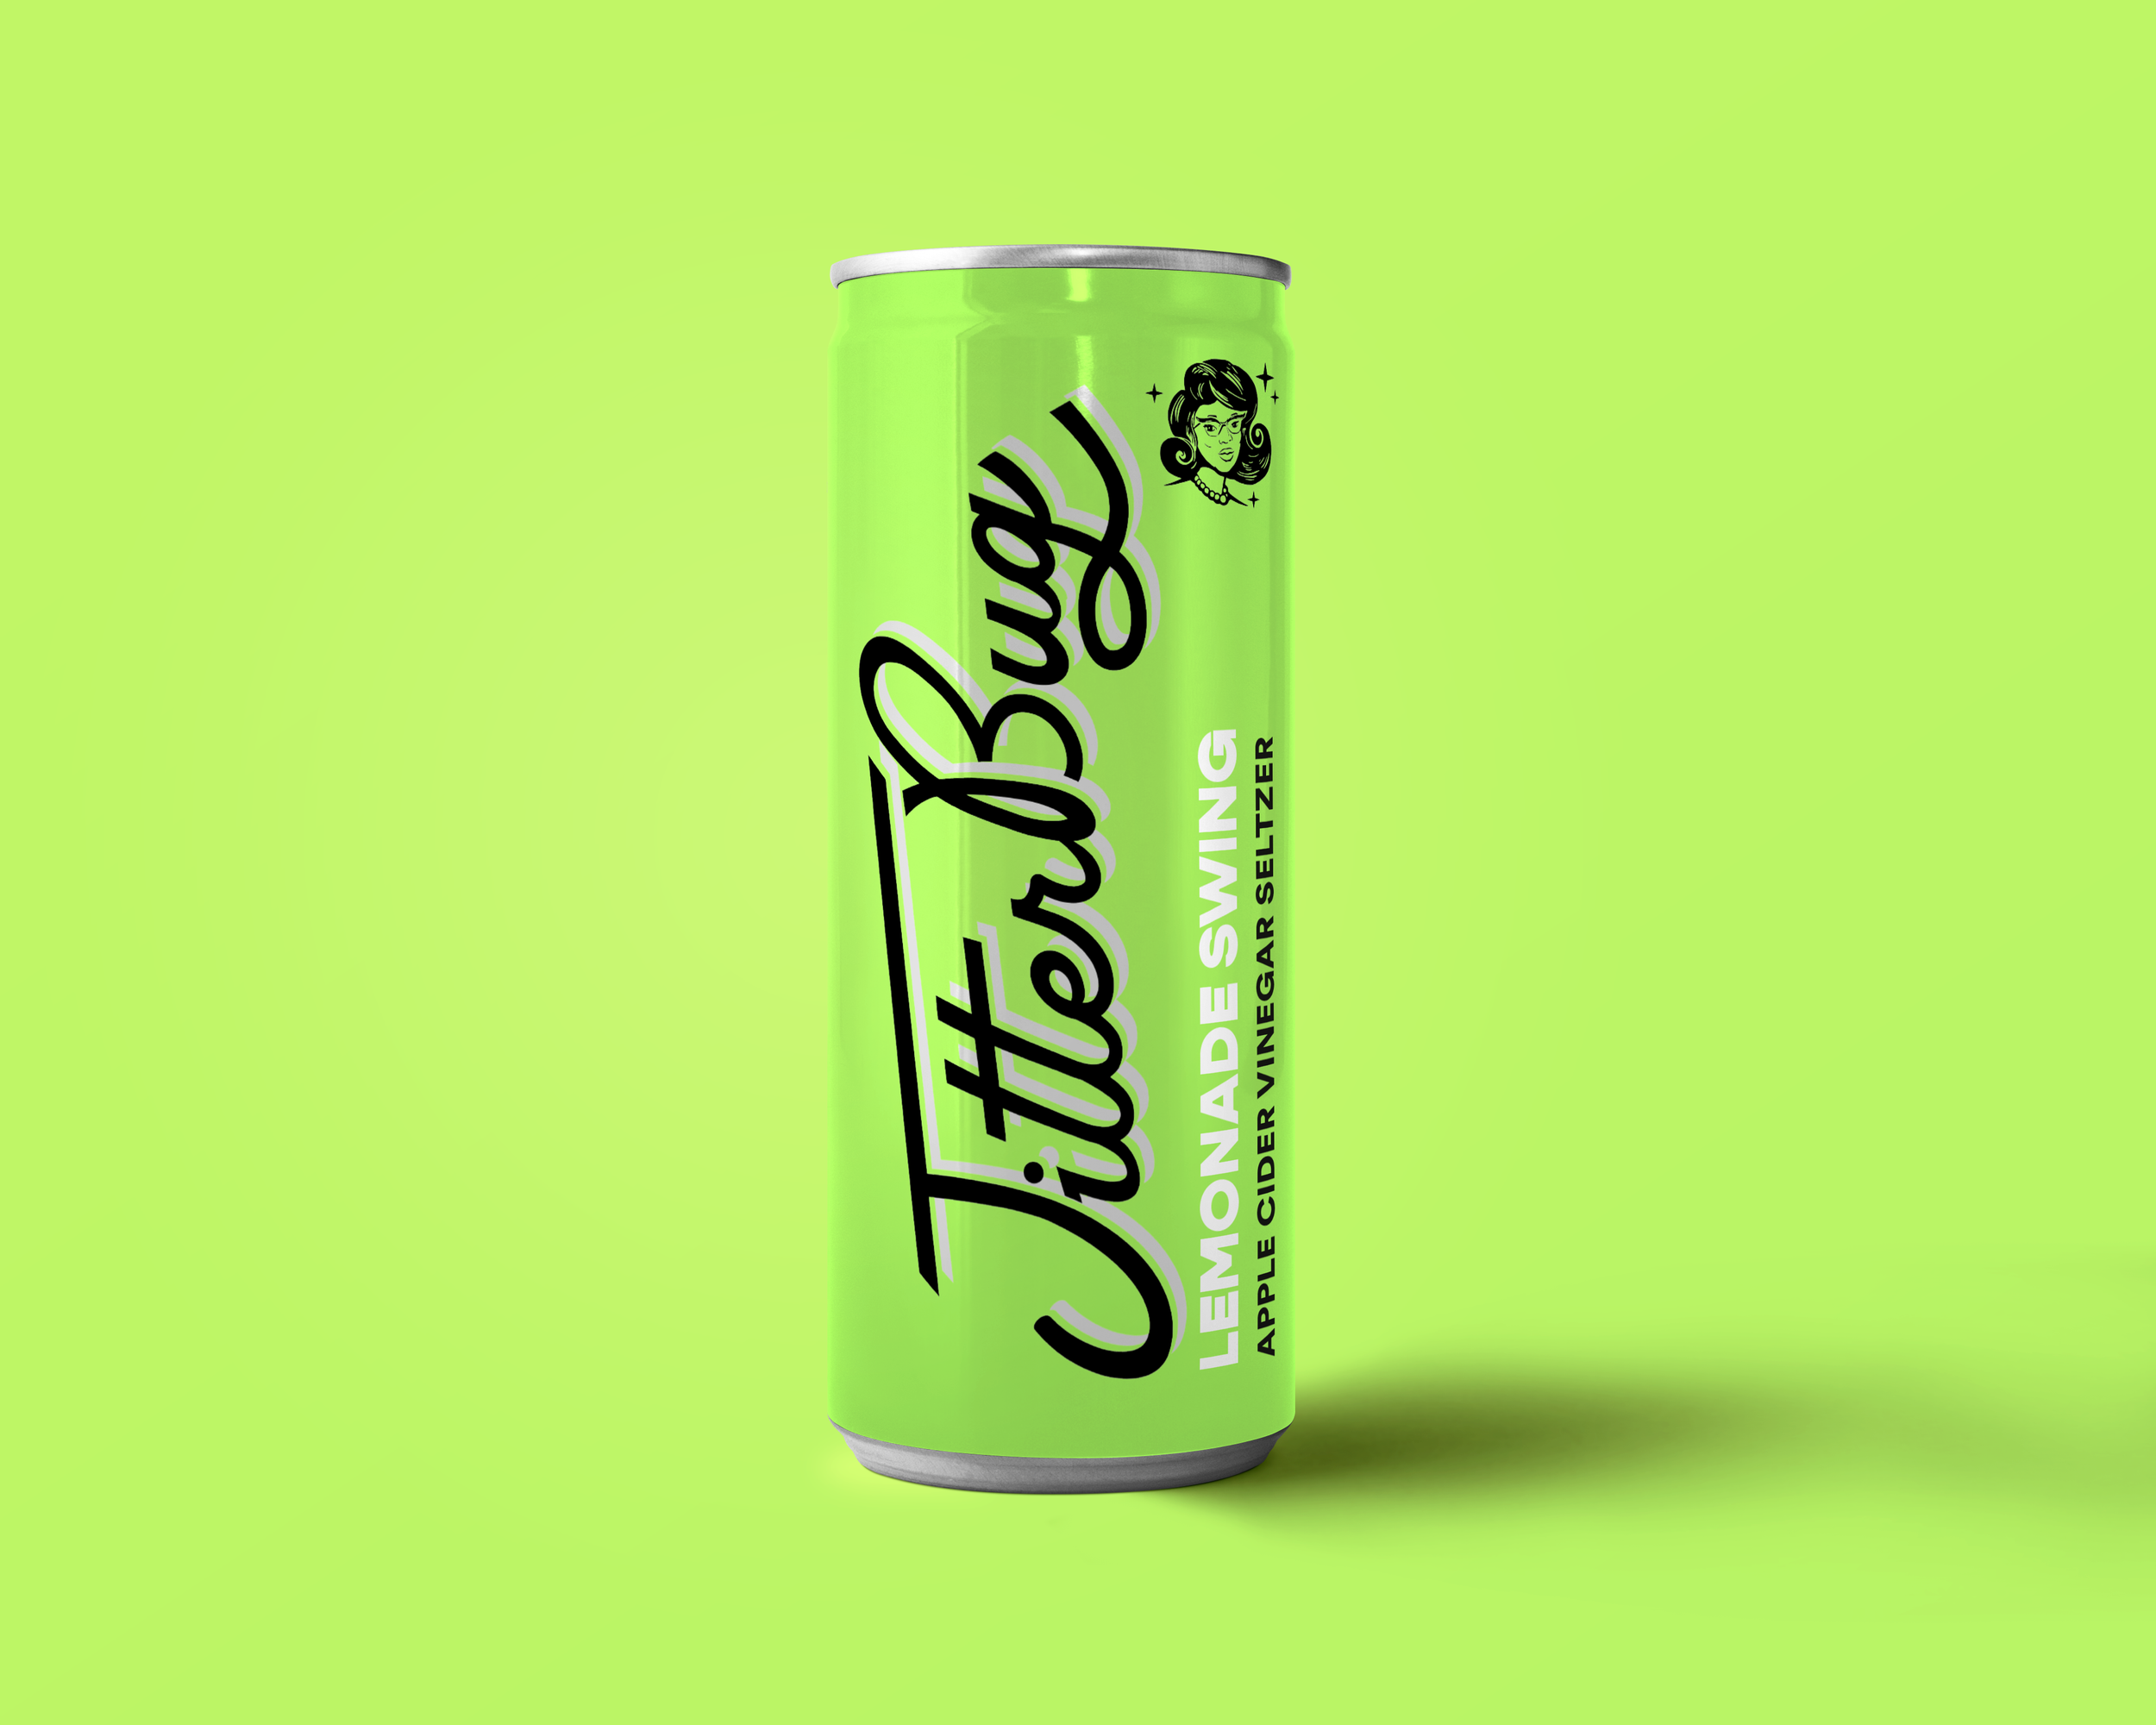 drink packaging design - UK, London based  